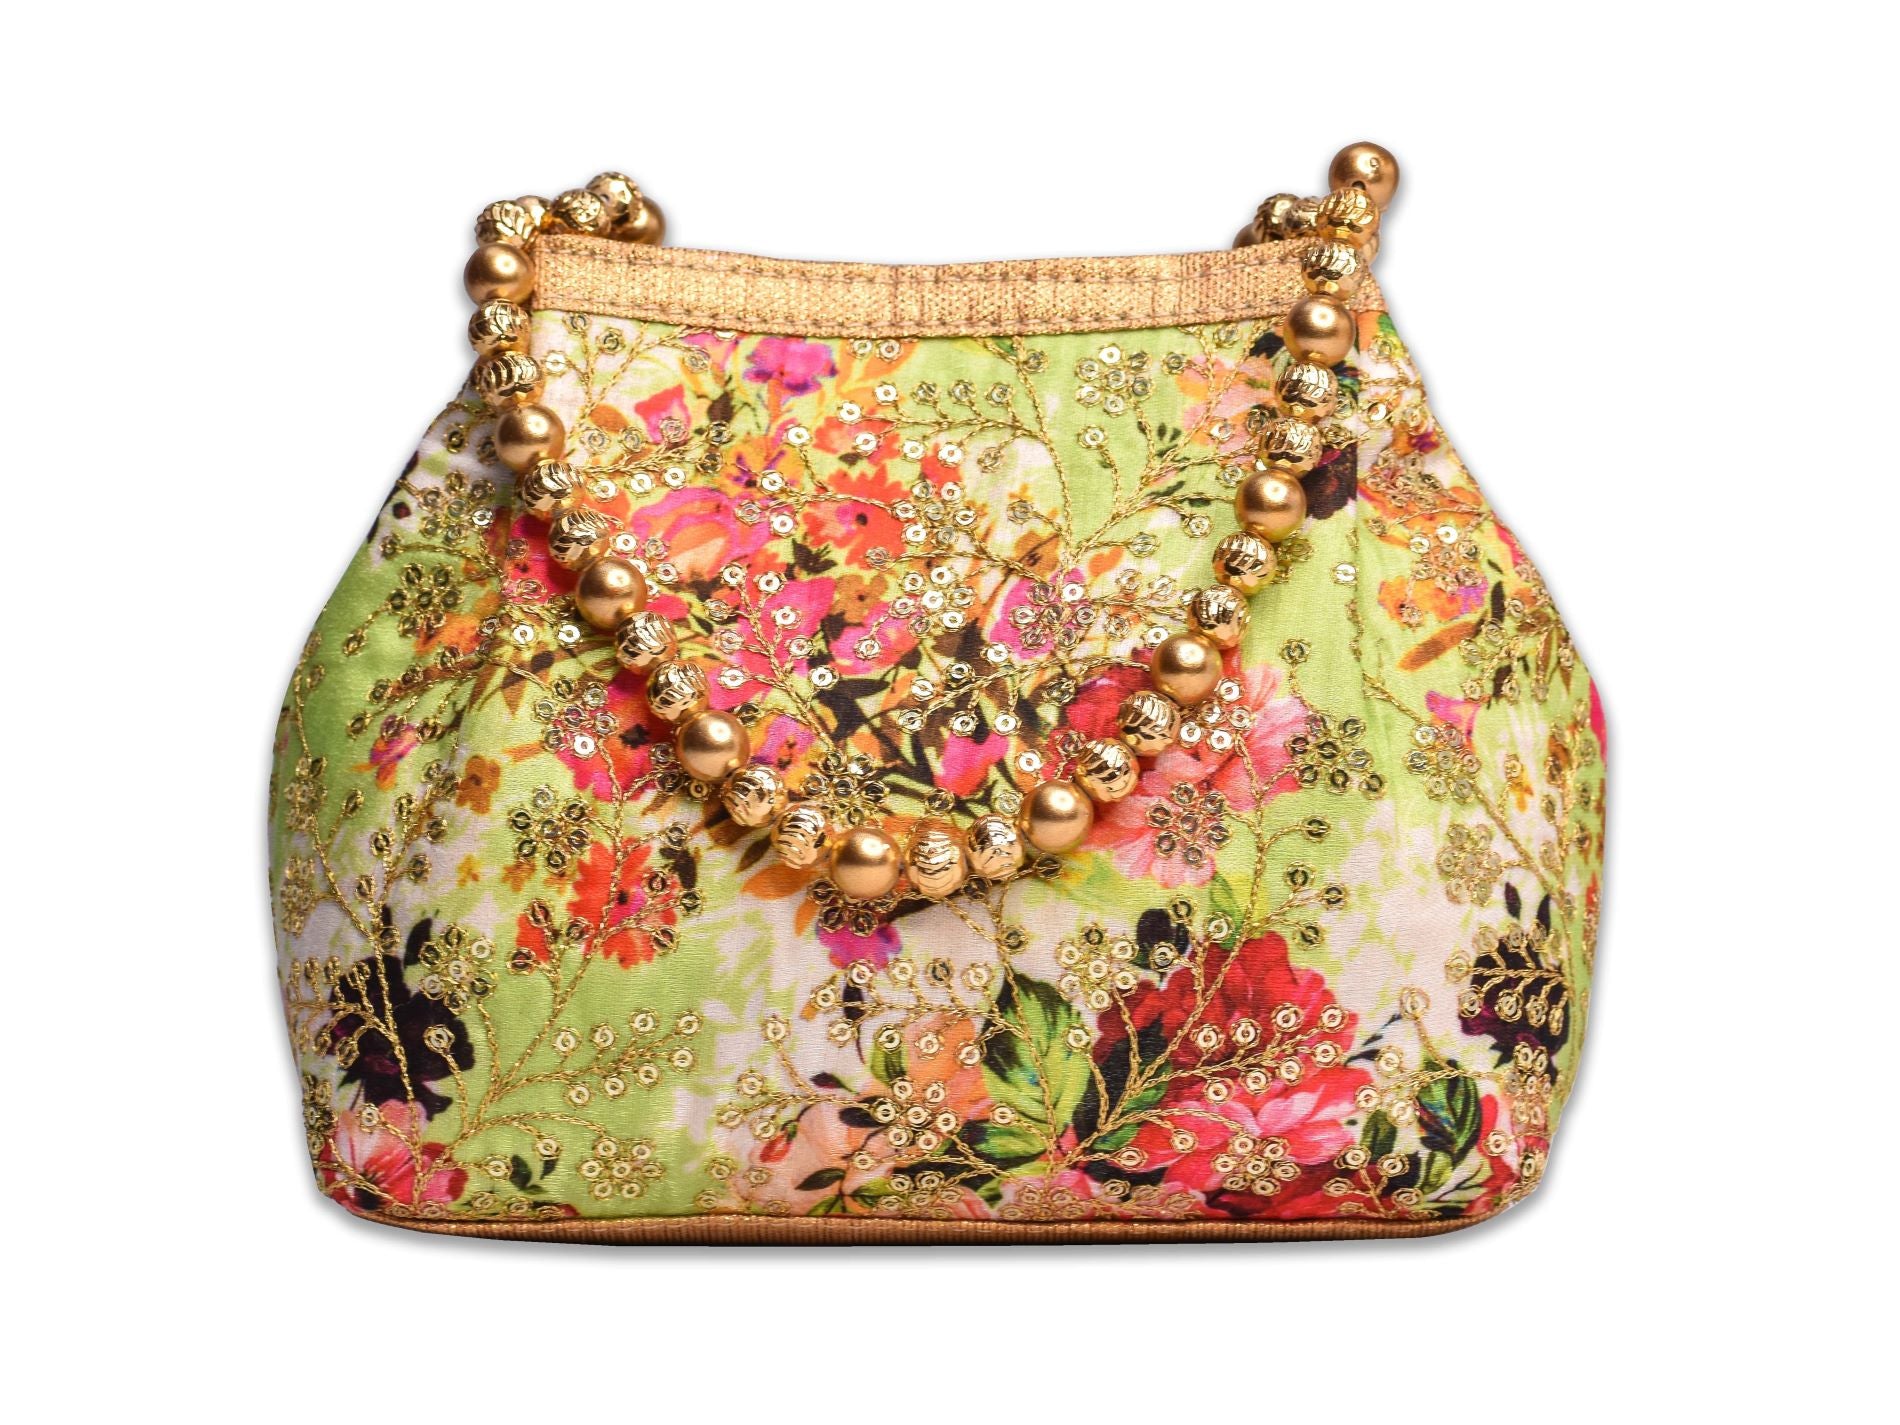 Buy Russian Pavloposadsky Style Handbag Ethnic Floral Purse Gift for Her  Violet Pink Bag Designer Bag Handmade Russian Style Bag Online in India -  Etsy